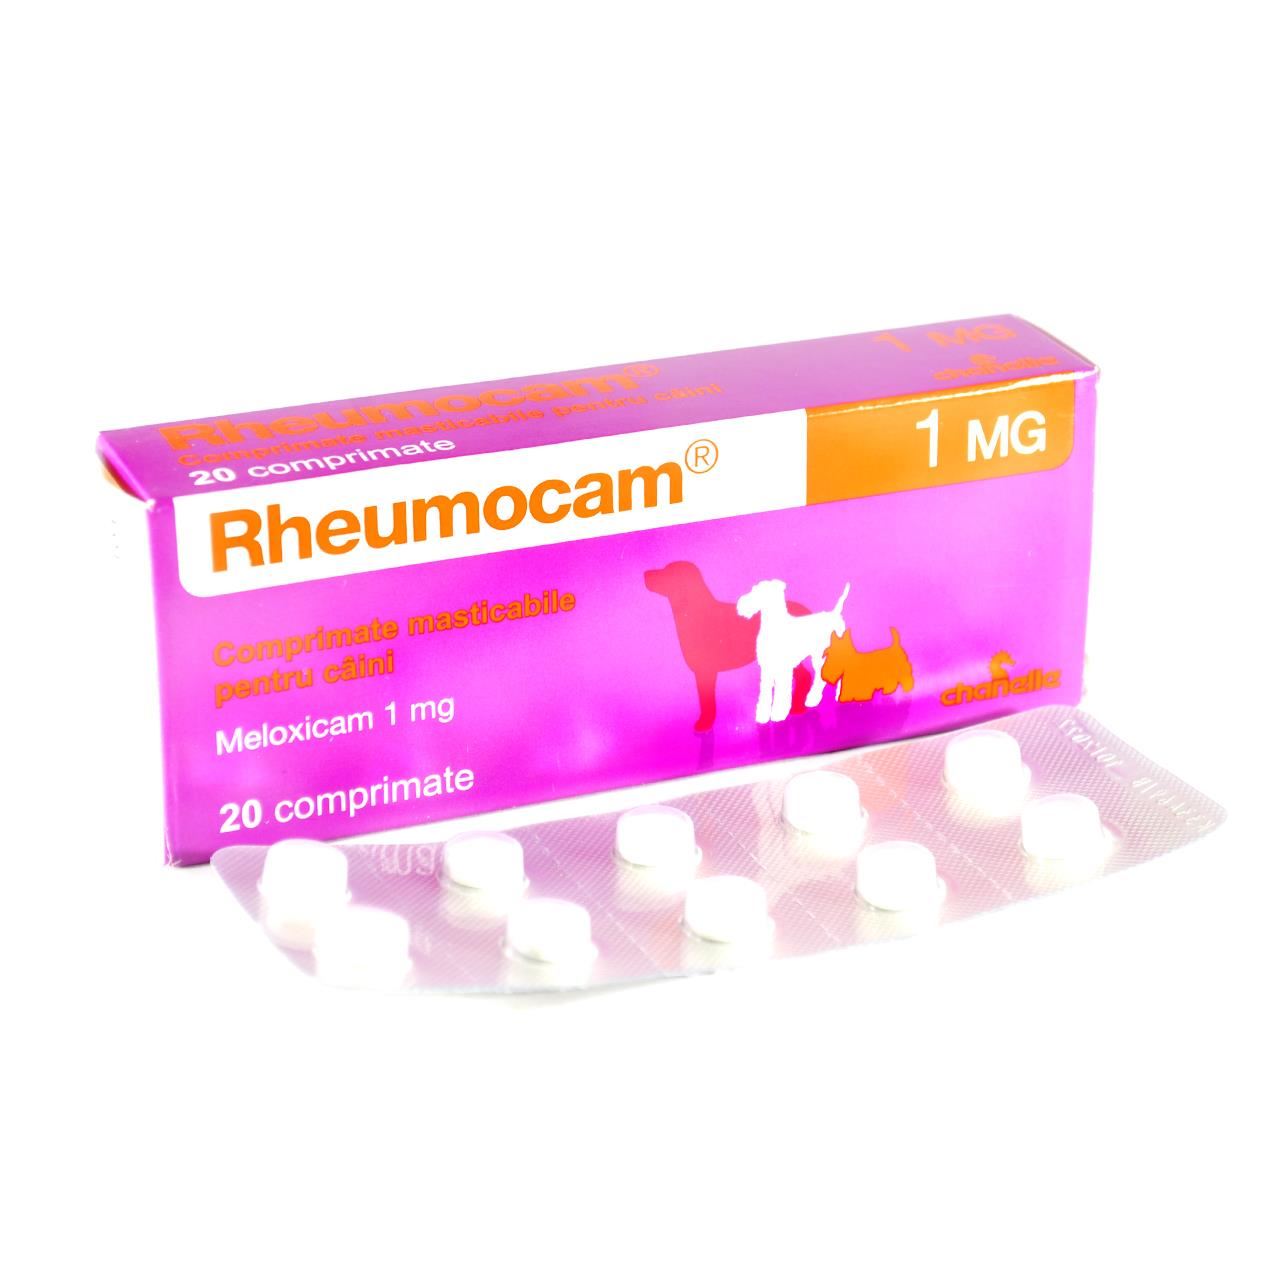 Rheumocam 1 mg, 20 comprimate